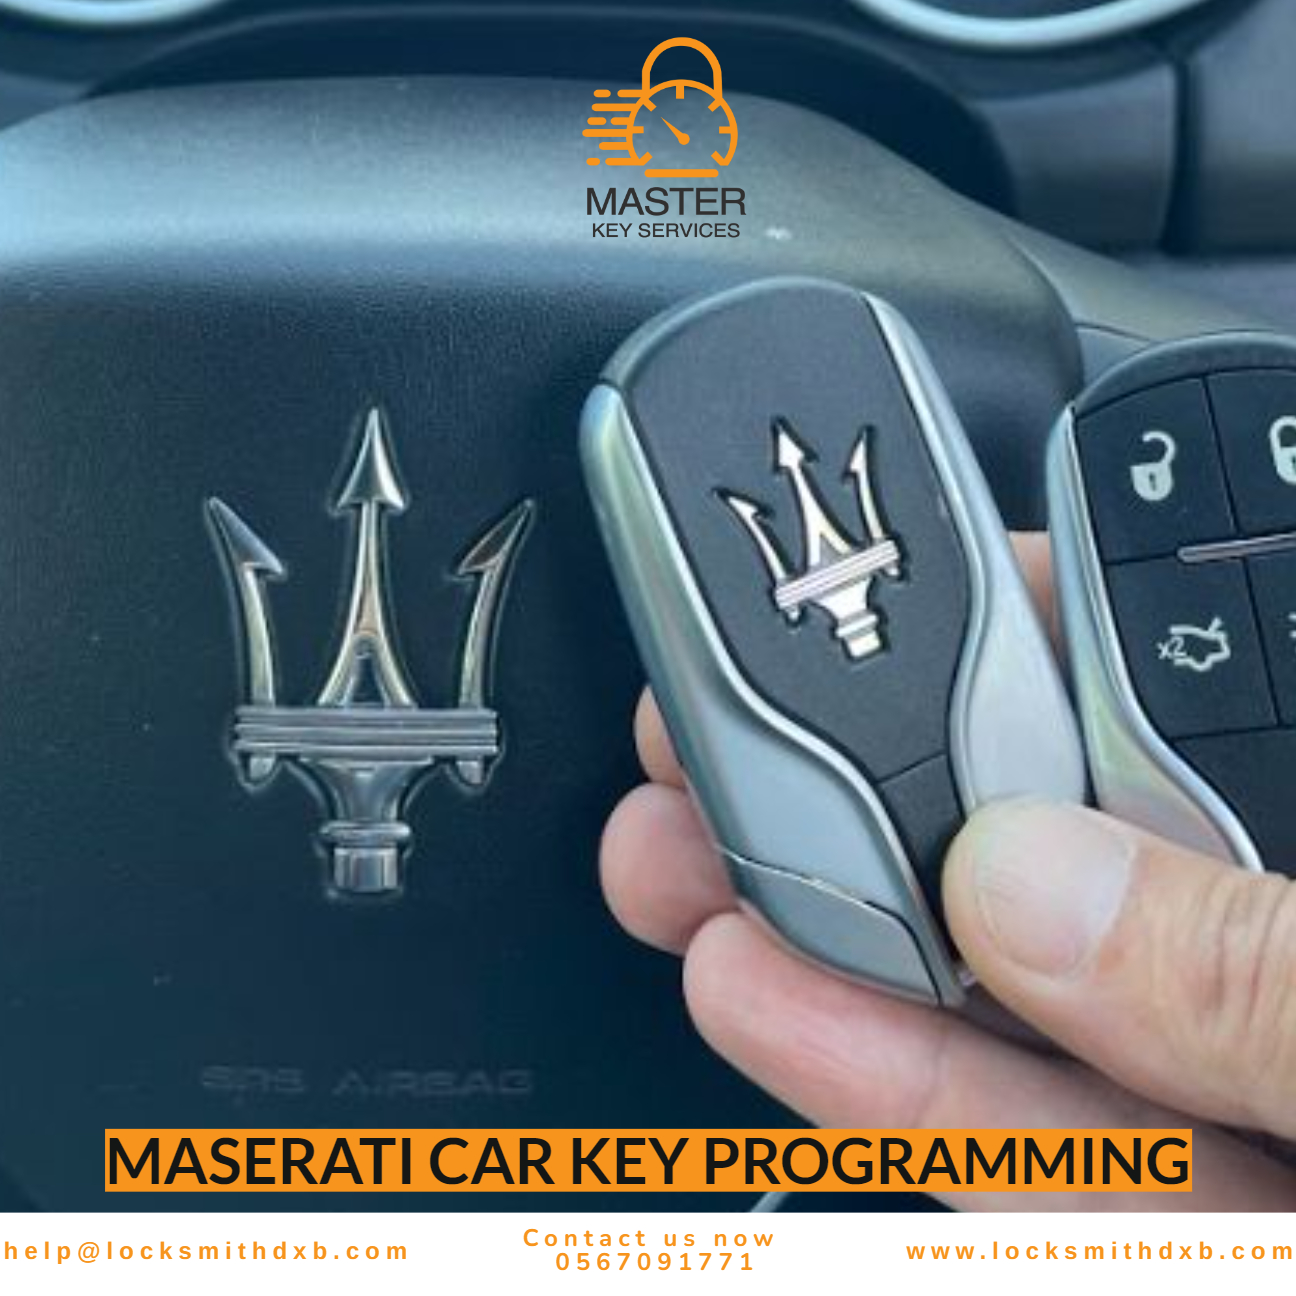 MASERATI car key programming